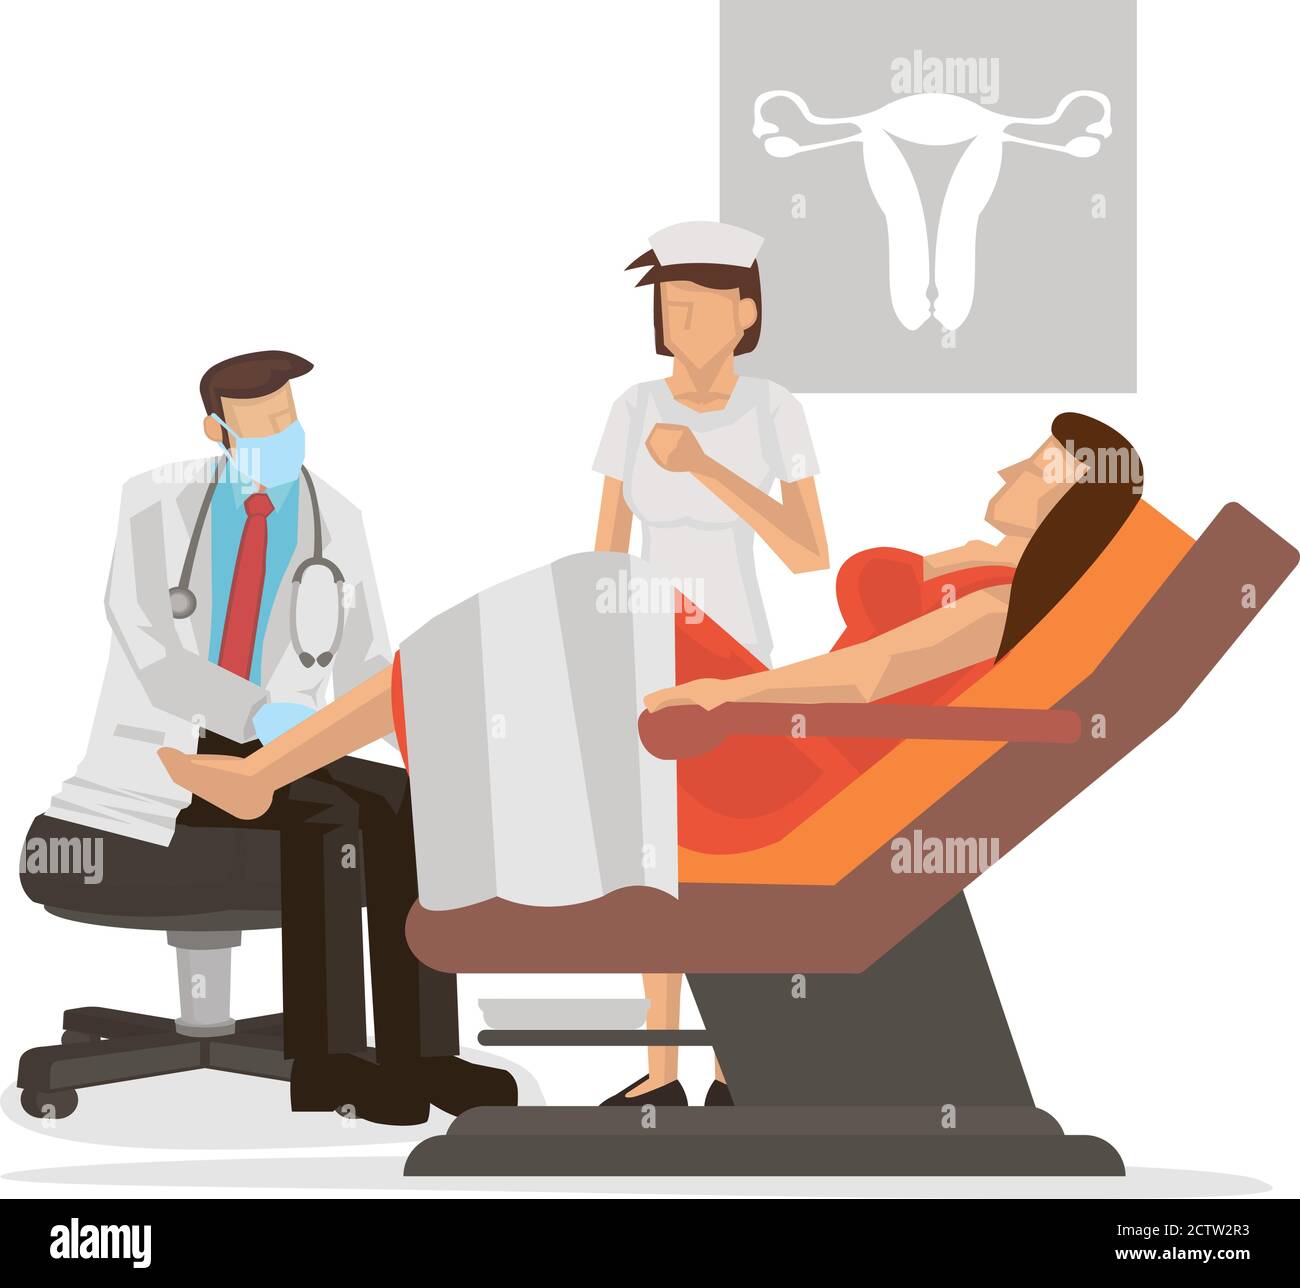 Gynäkologe untersucht den Patienten, der in einem gynäkologischen Untersuchungsstuhl sitzt. Konzept der Schwangerschaft, Frau, Gynäkologie oder Frau Gesundheitsversorgung. Vektorillus Stock Vektor